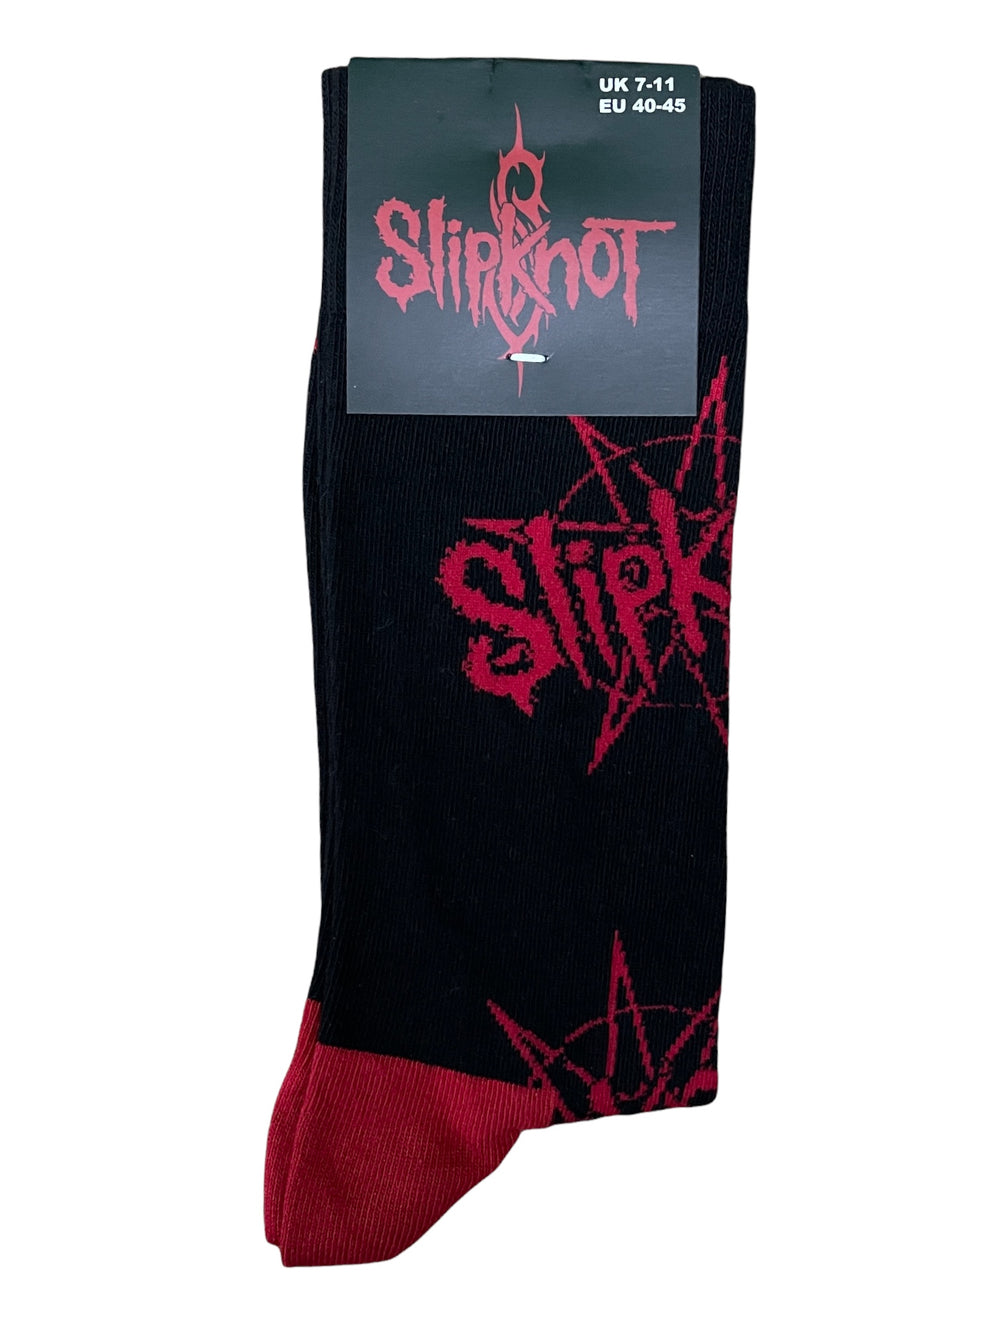 Slipknot Logo & Nonagram Official Product 1 Pair Jacquard Socks Size 7-11 UK Brand New